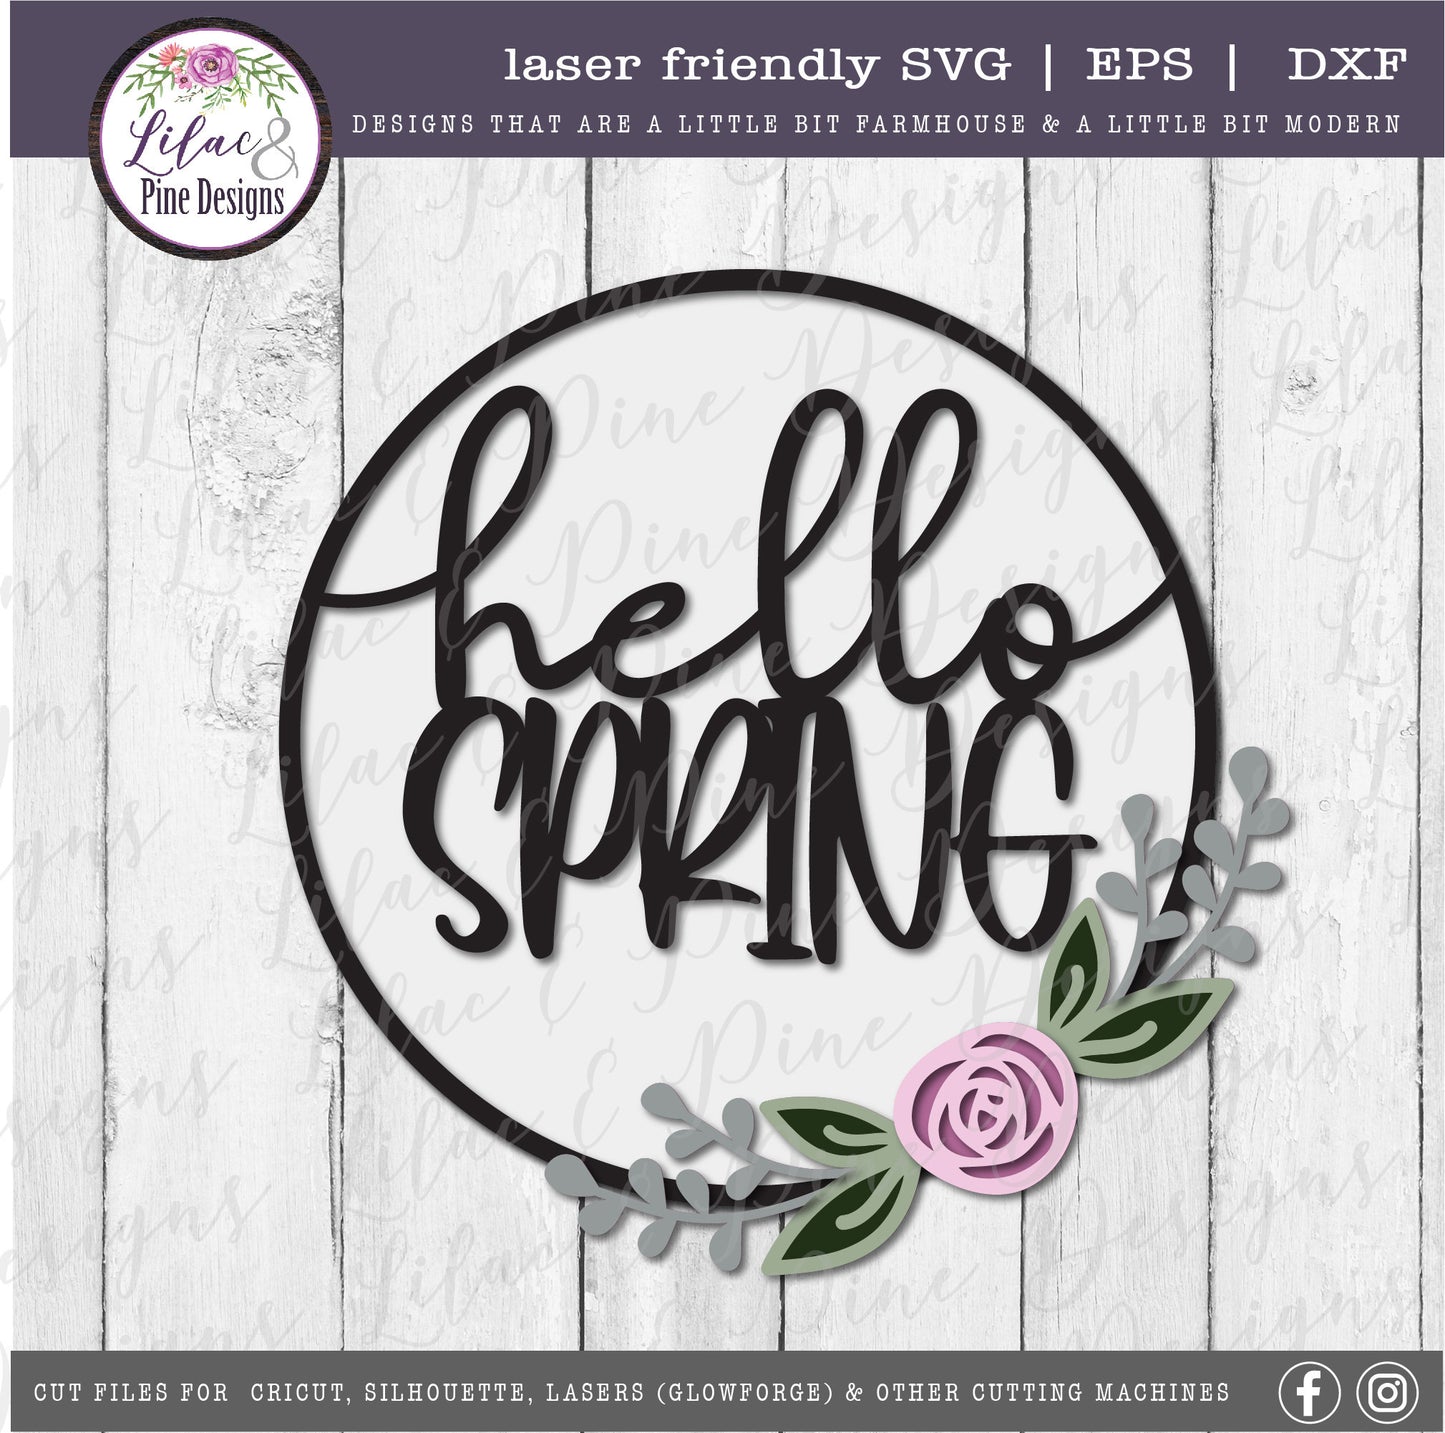 Hello Spring SVG, spring floral decor SVG, rose svg, flower SVG, spring sign, farmhouse decor, Cricut Svg, Glowforge Svg, laser cut file